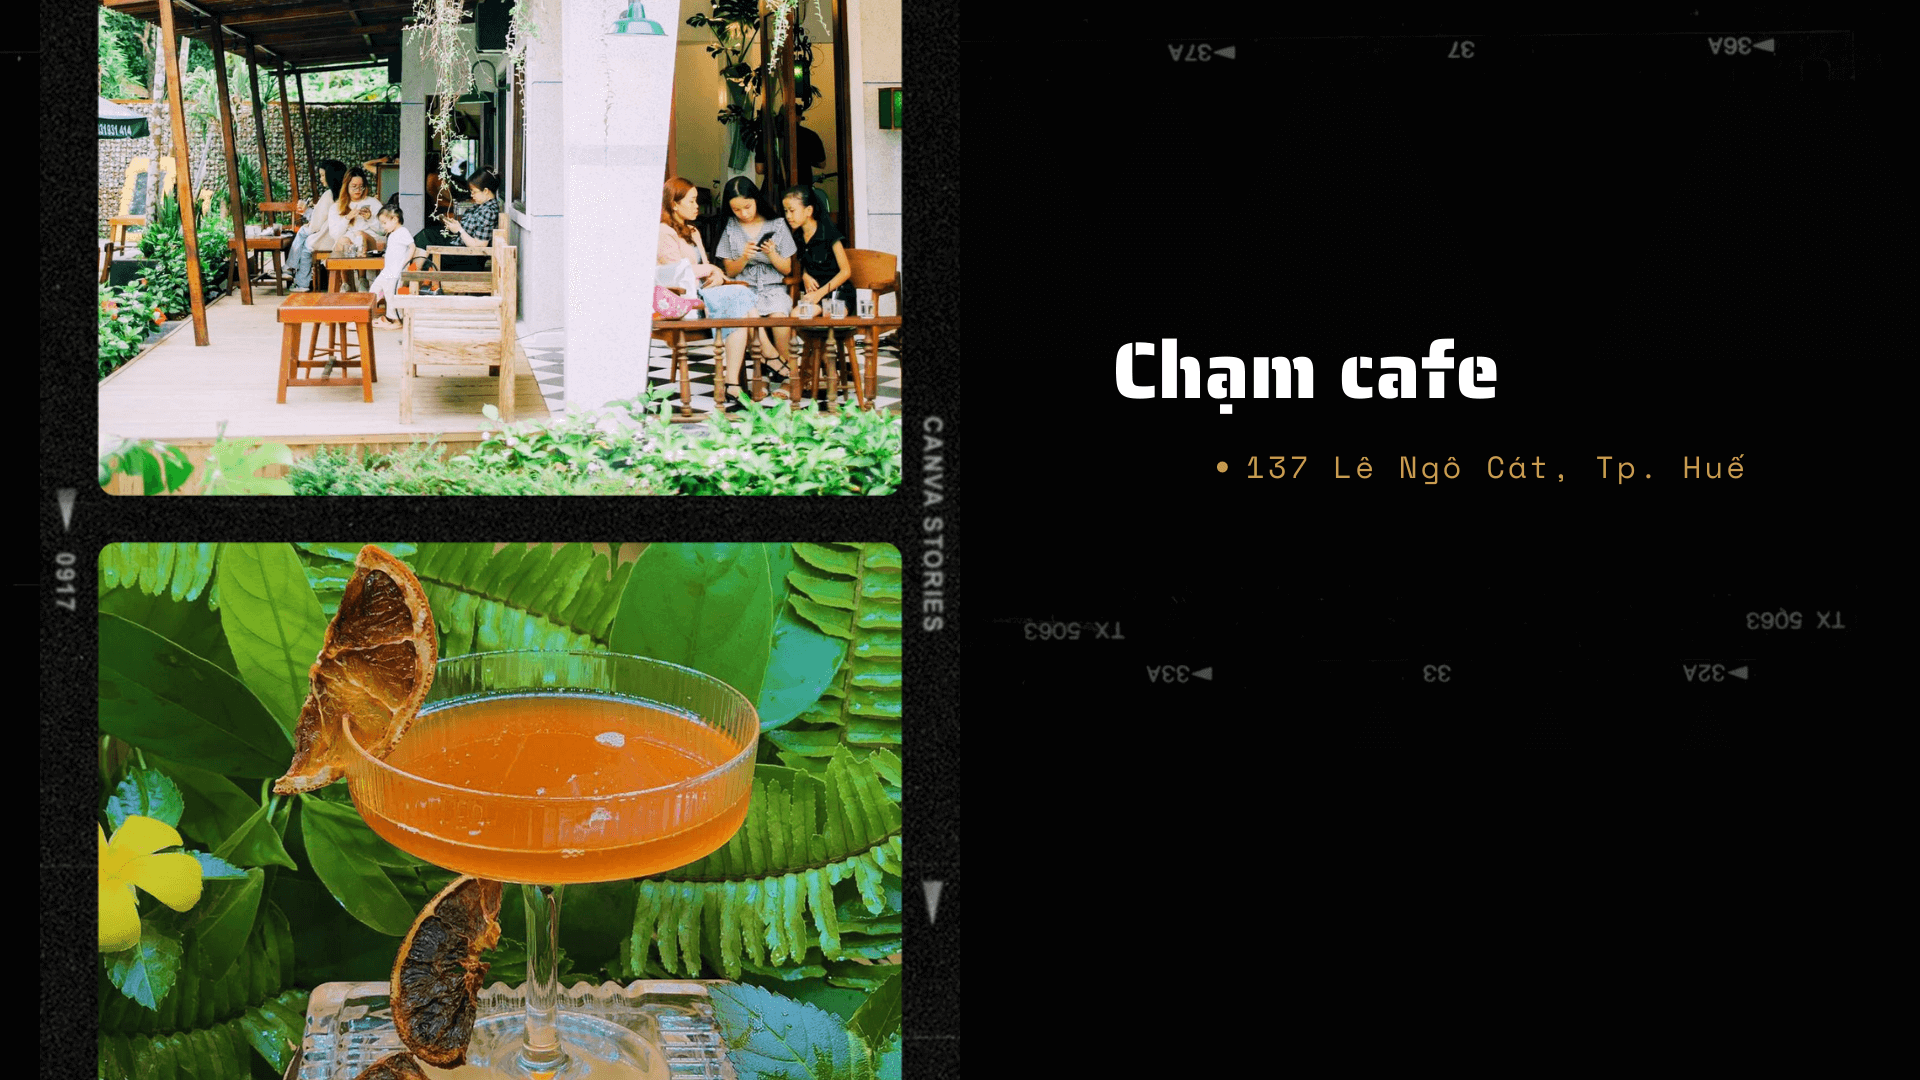 Tổng hợp các quán cafe chill, thức uống ngon, không gian yên tĩnh và mang dậm phong cách vintage ở Huế